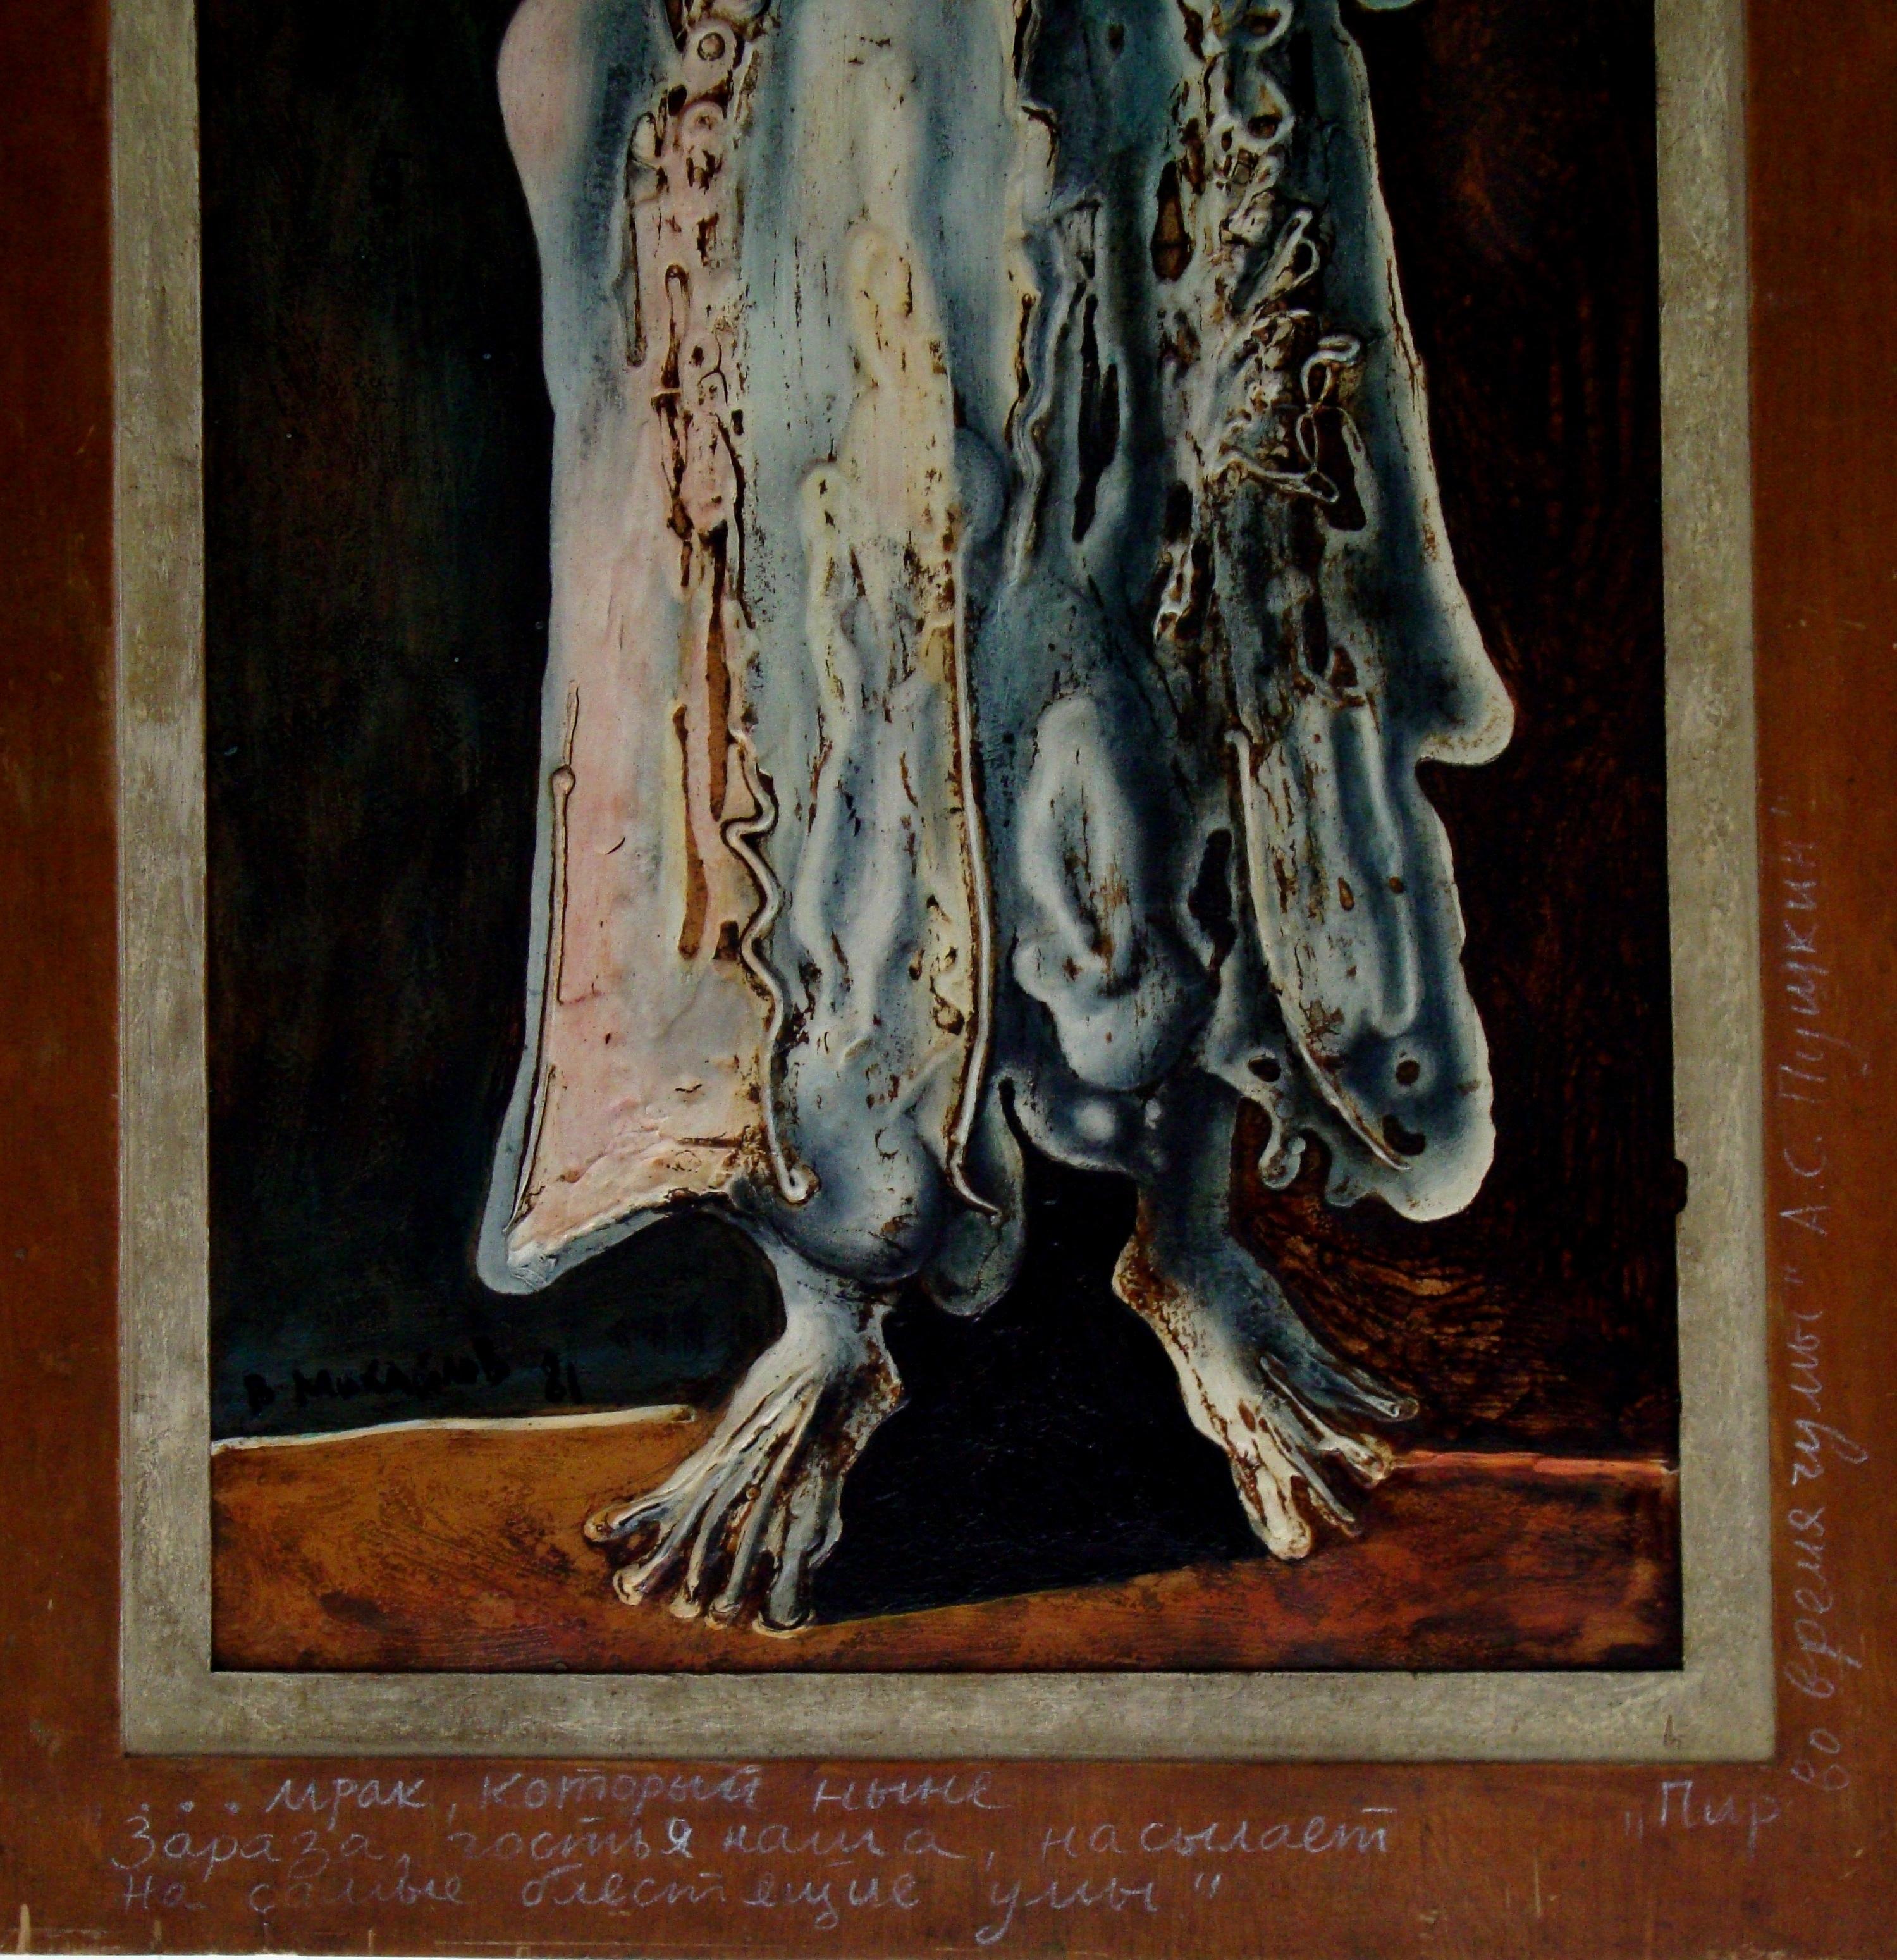 Guest. 1981, Autorentechnik auf Sperrholz, 89x54, 5 cm (Expressionismus), Painting, von Mihailov Vyacheslav Sawich